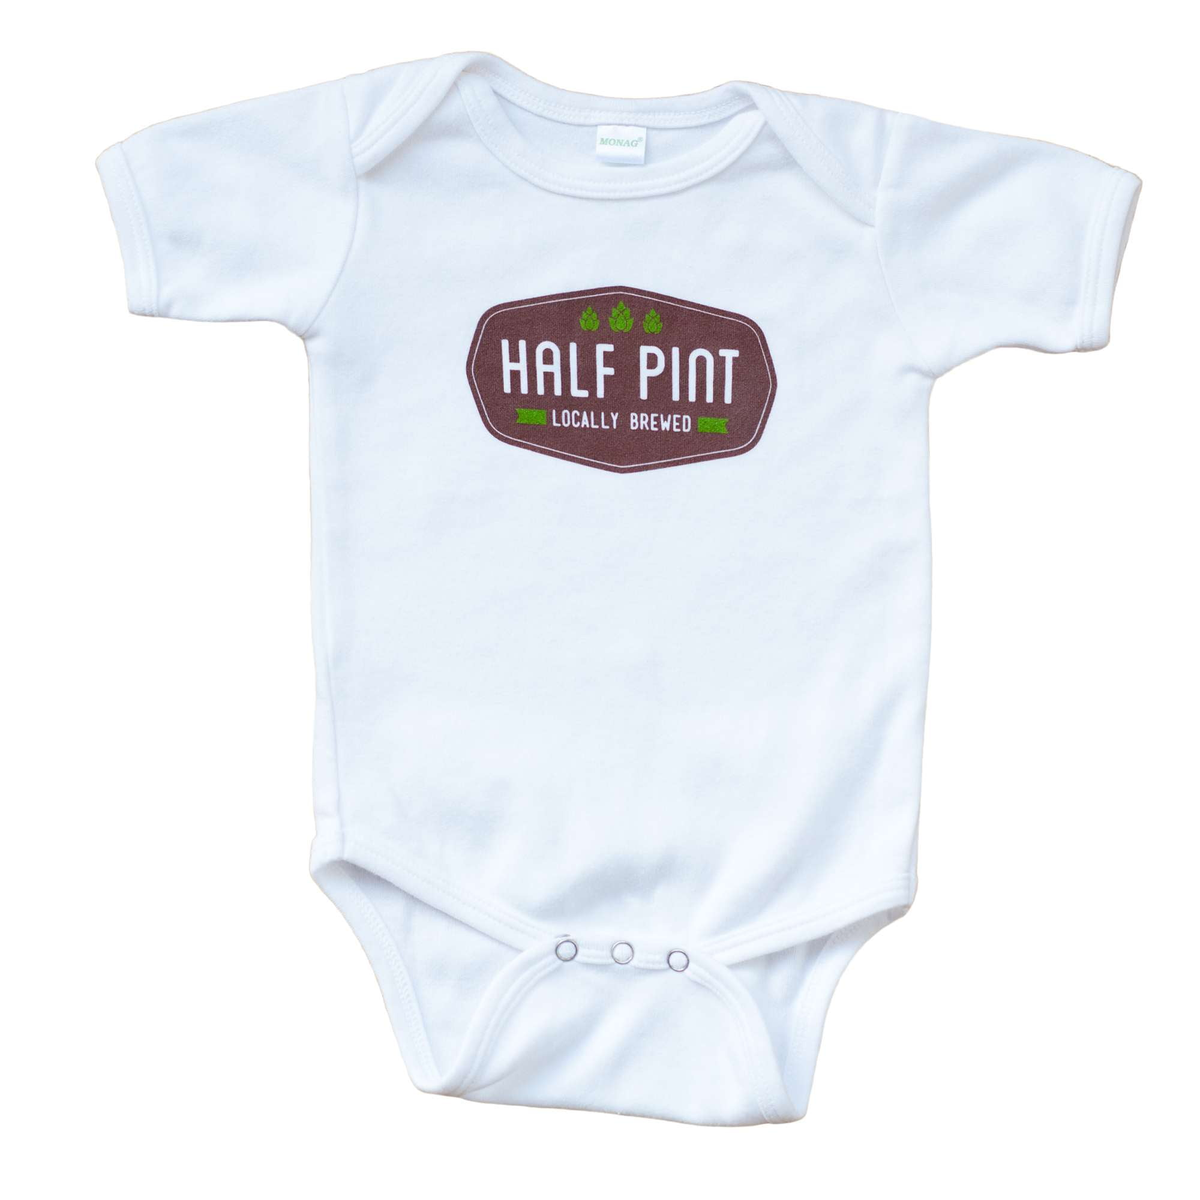 Half Pint Baby Bodysuit - Sweetpea and Co.